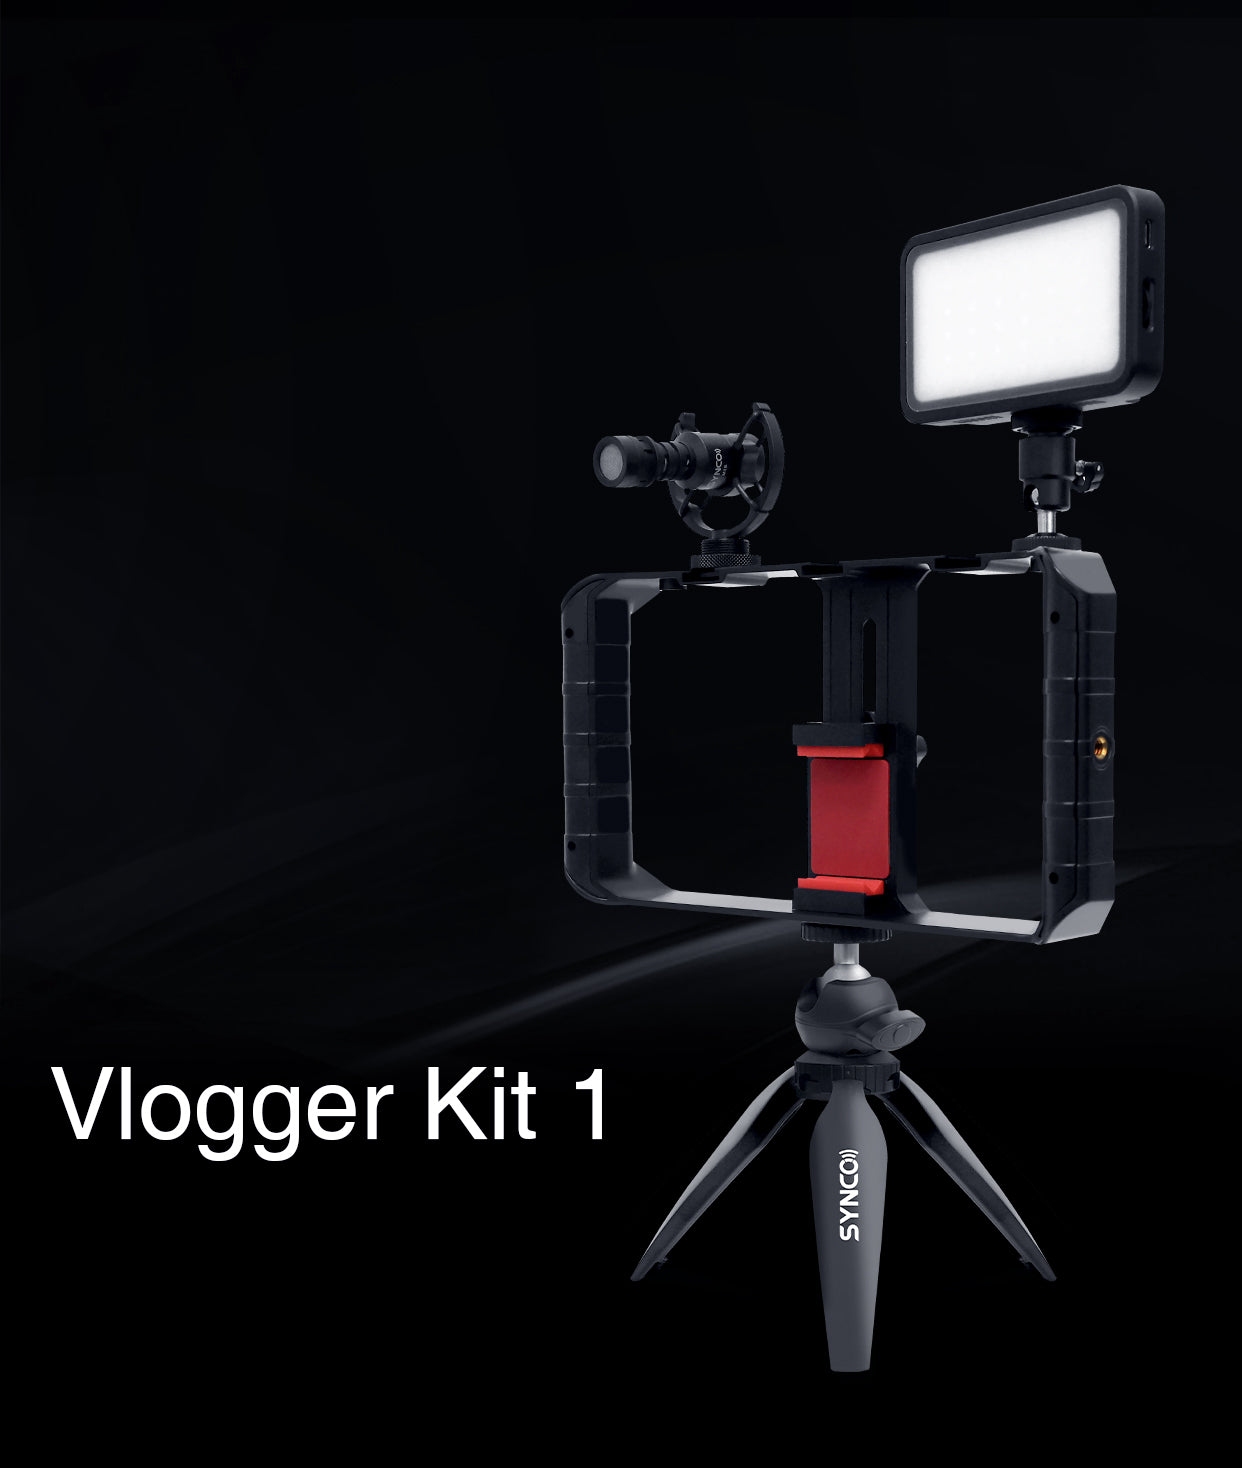 SYNCO Vlogger Kit 1